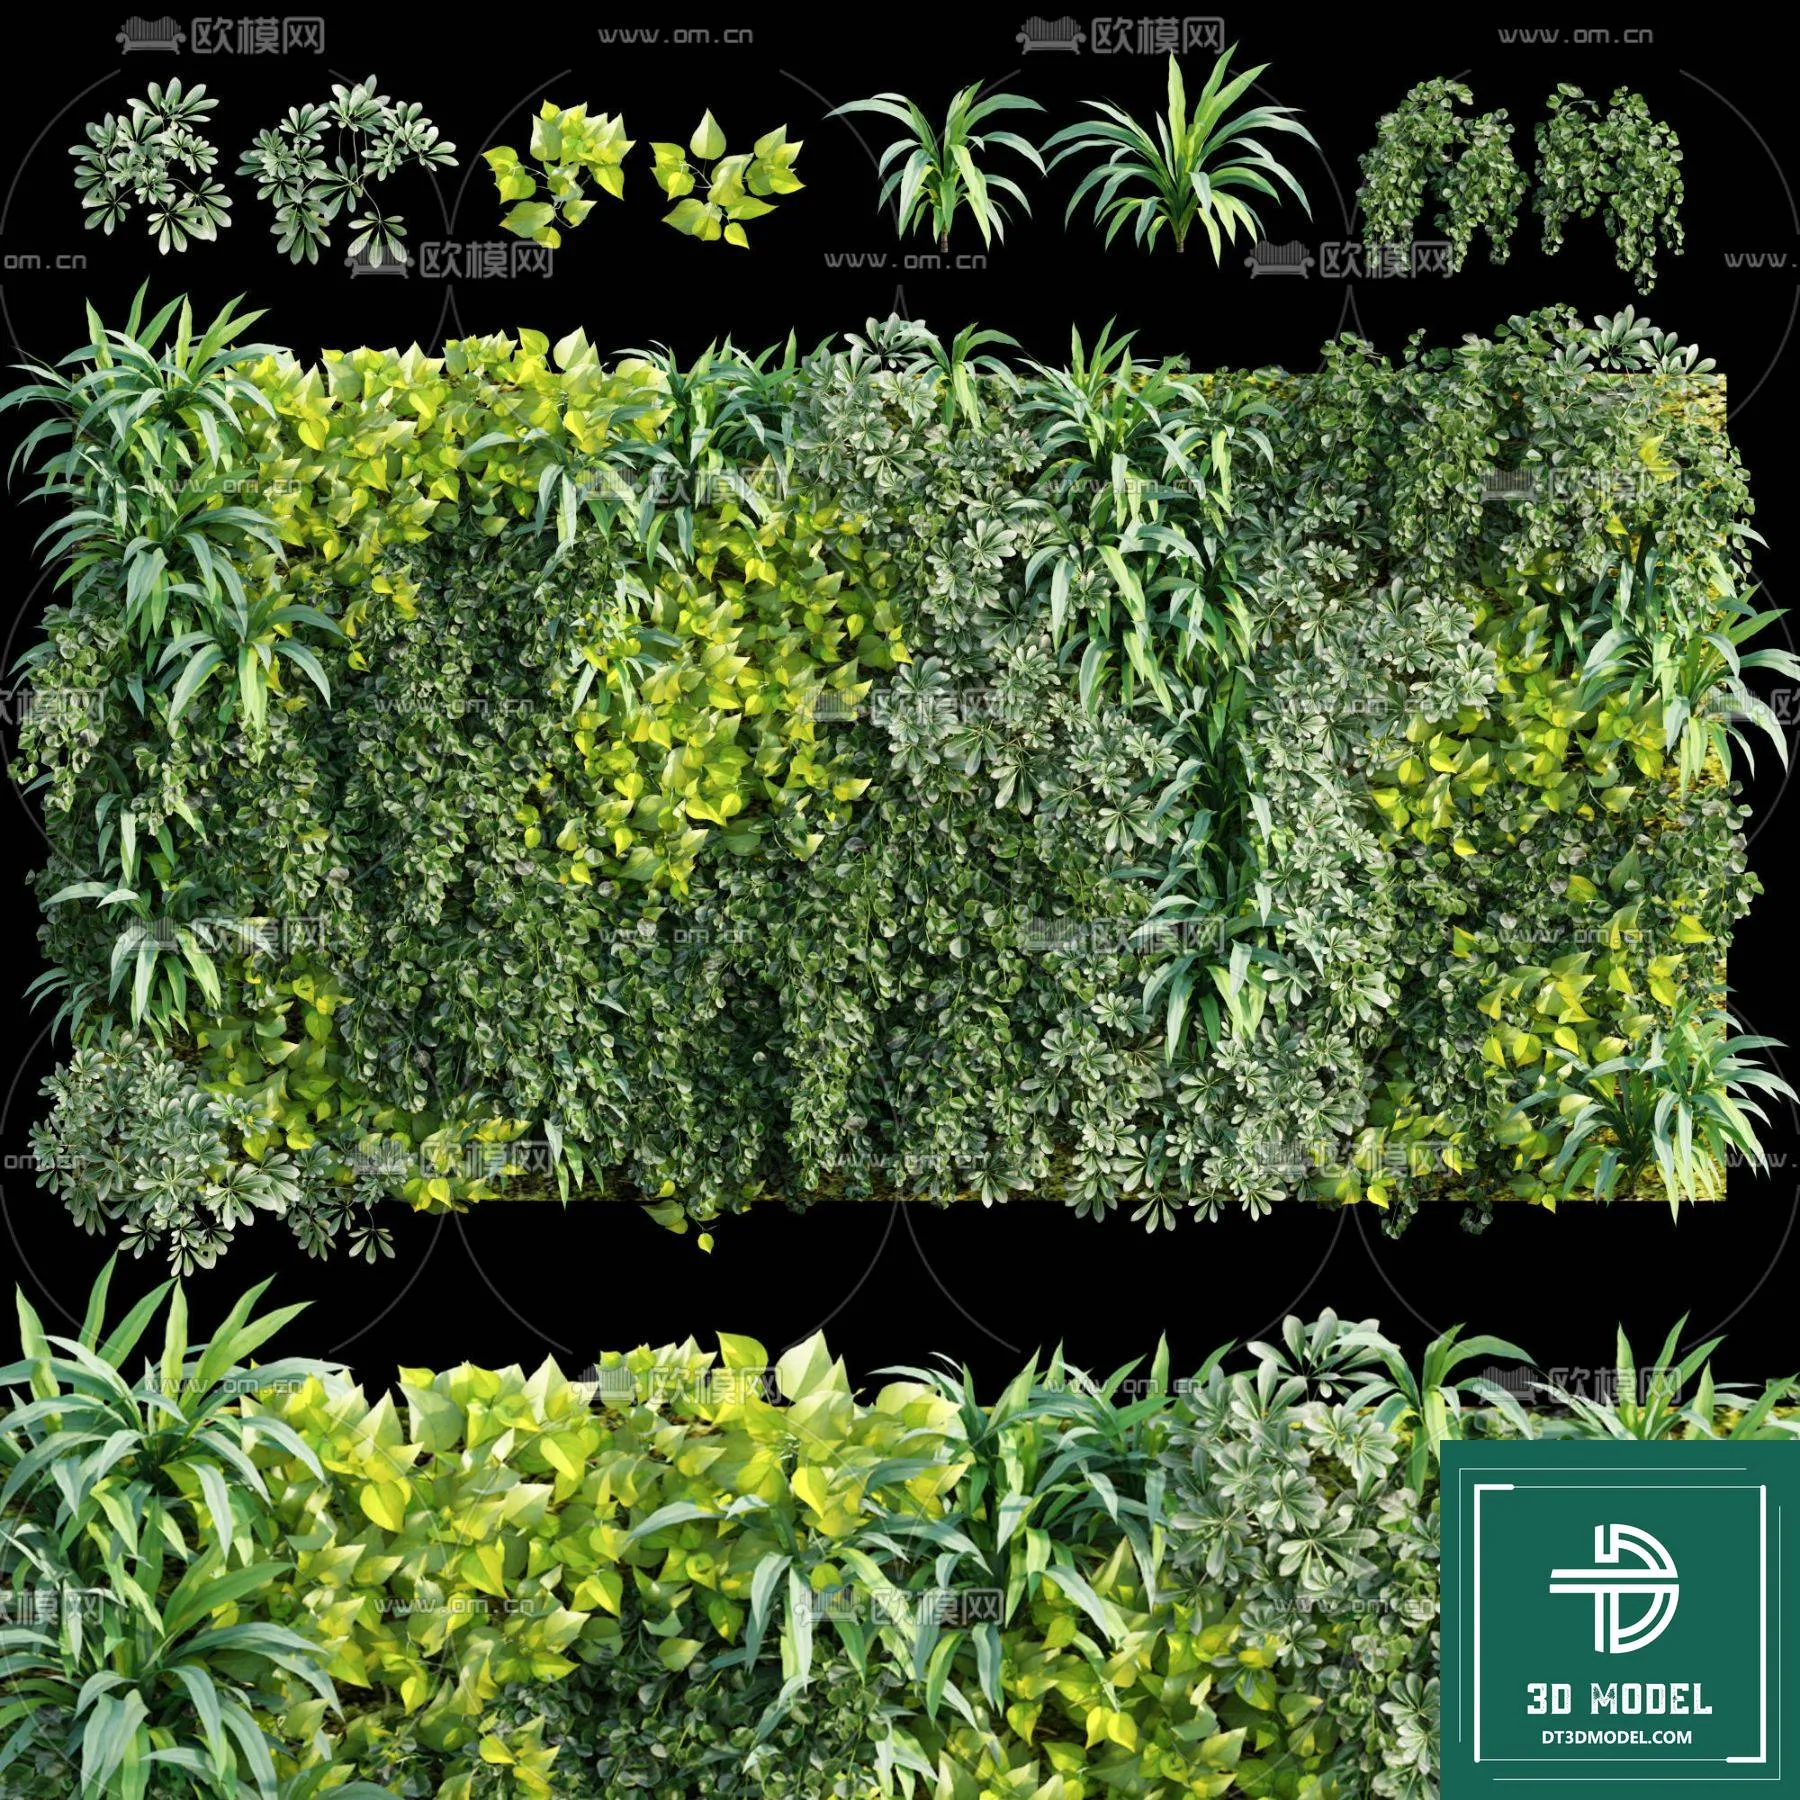 VERTICAL GARDEN – FITOWALL PLANT 3D MODEL – 133